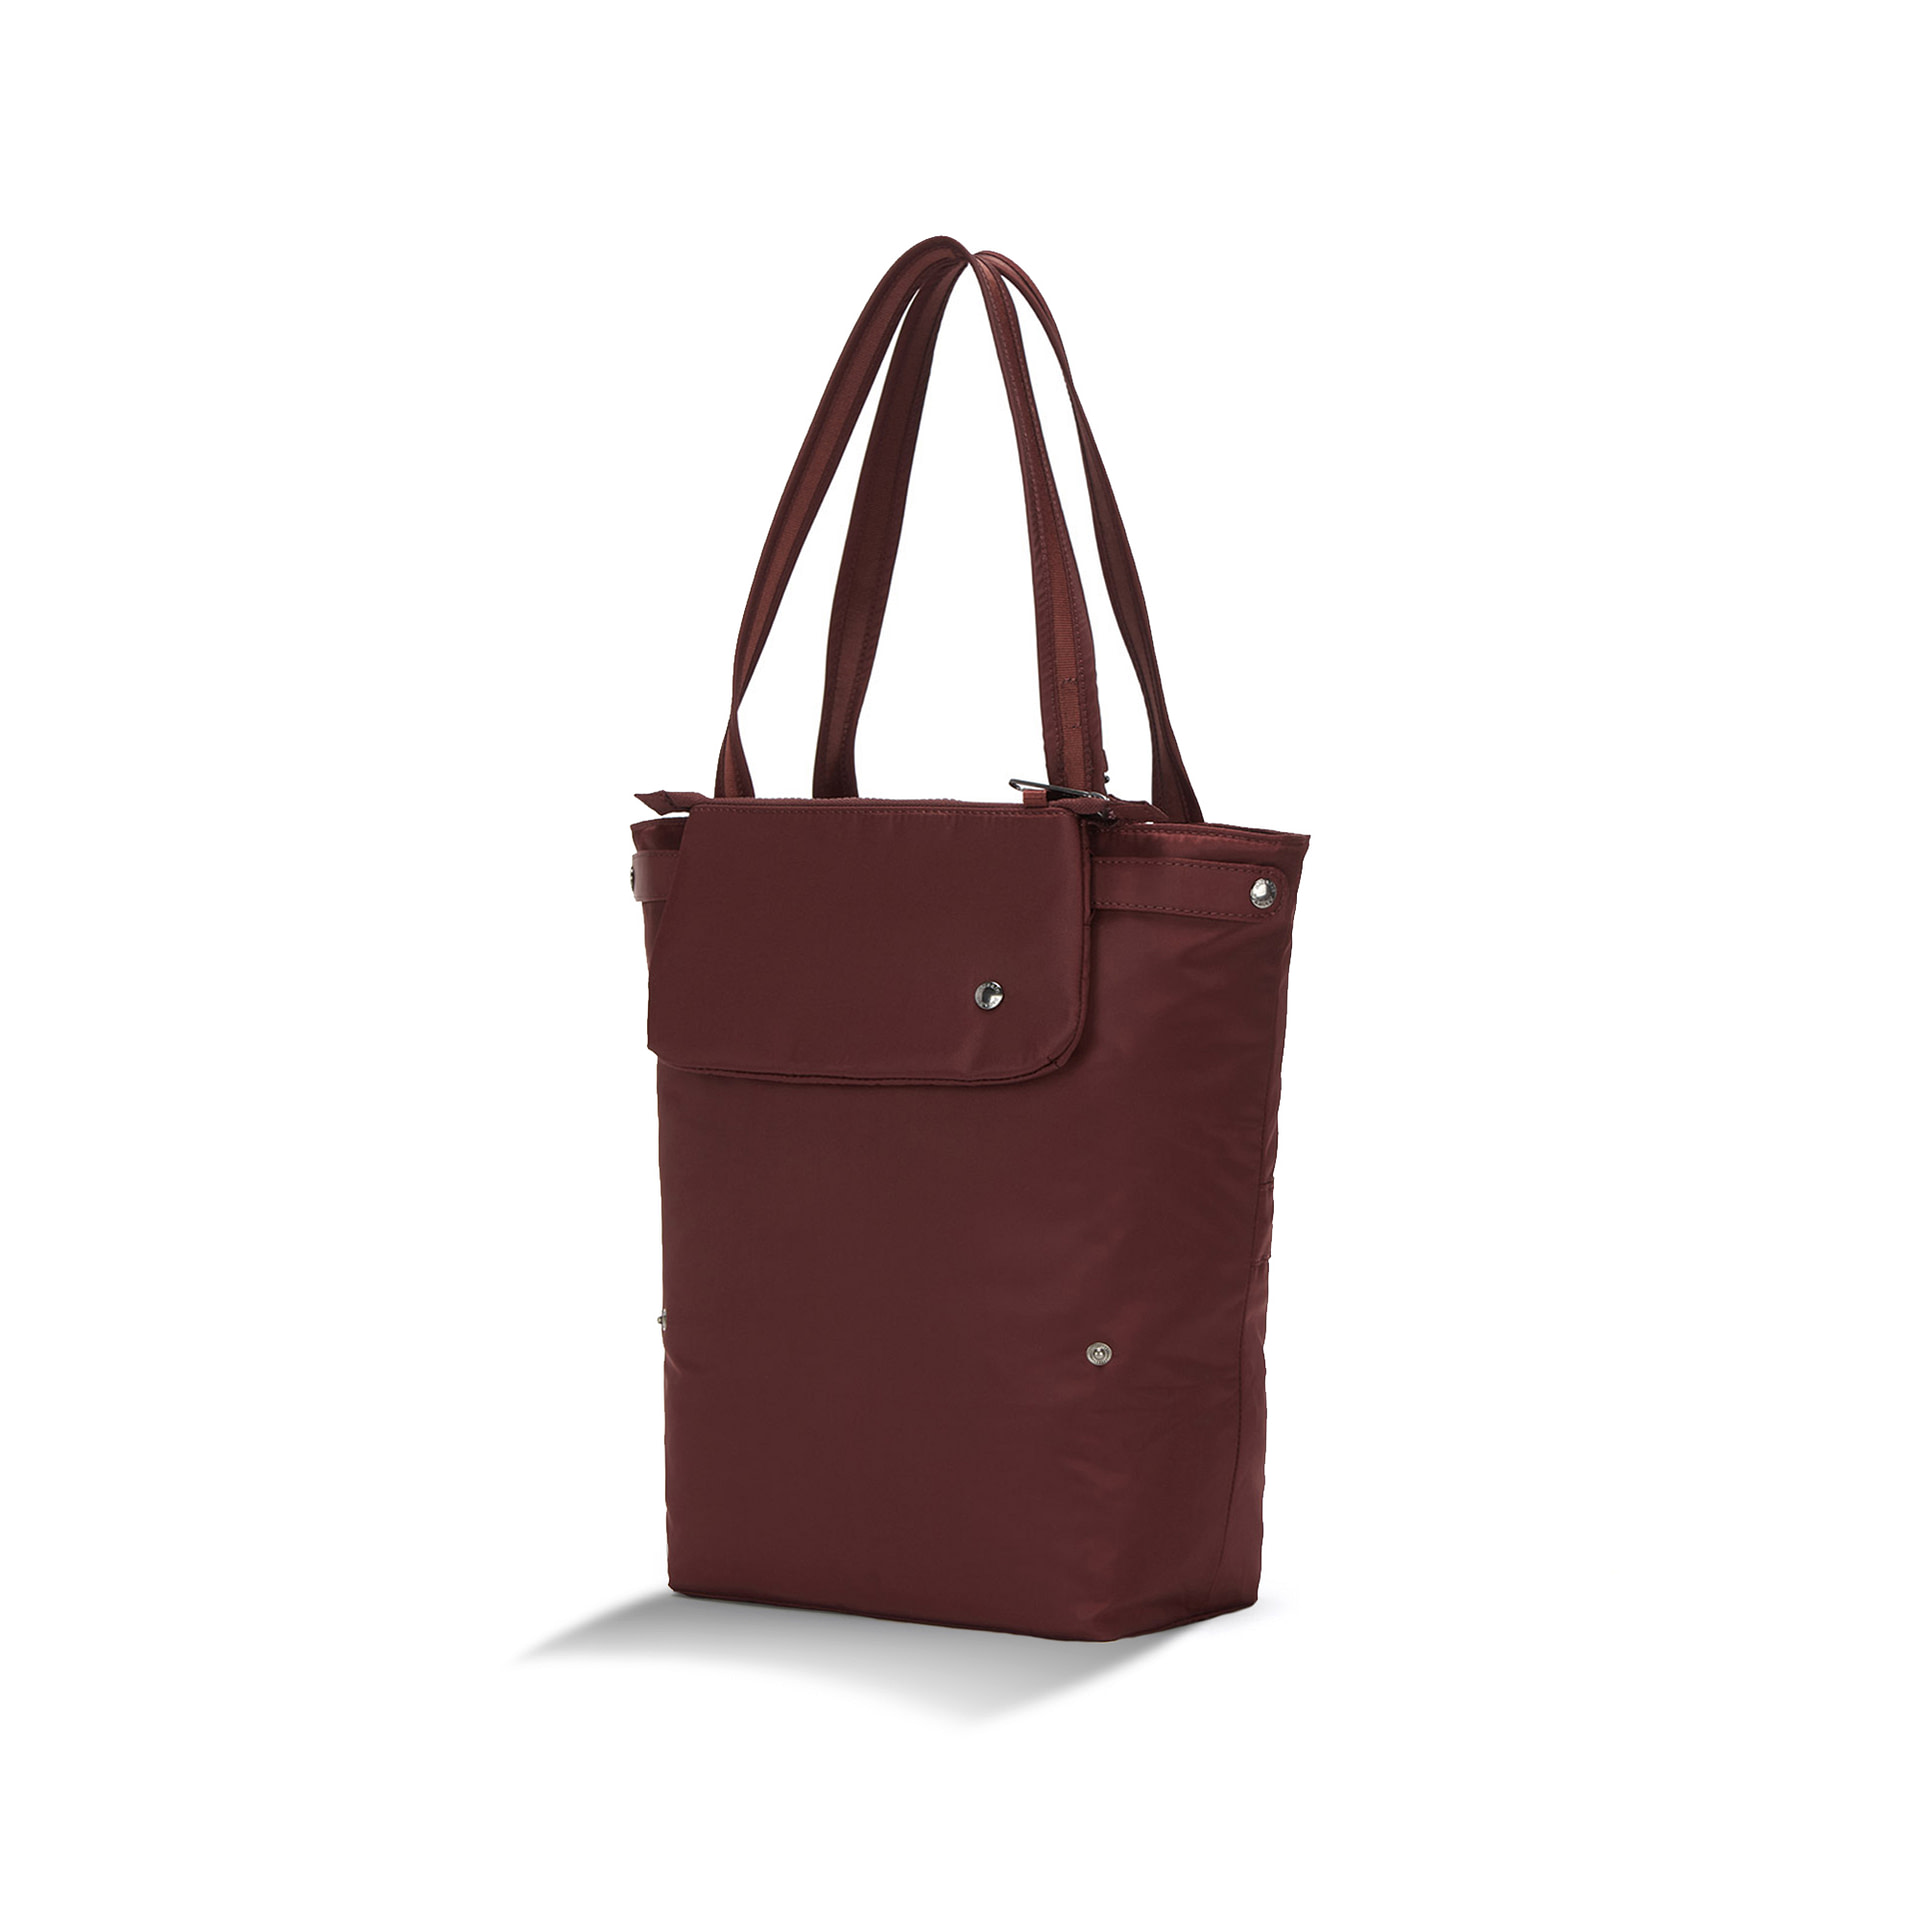 Pacsafe Citysafe CX Packable Tote Bag Review